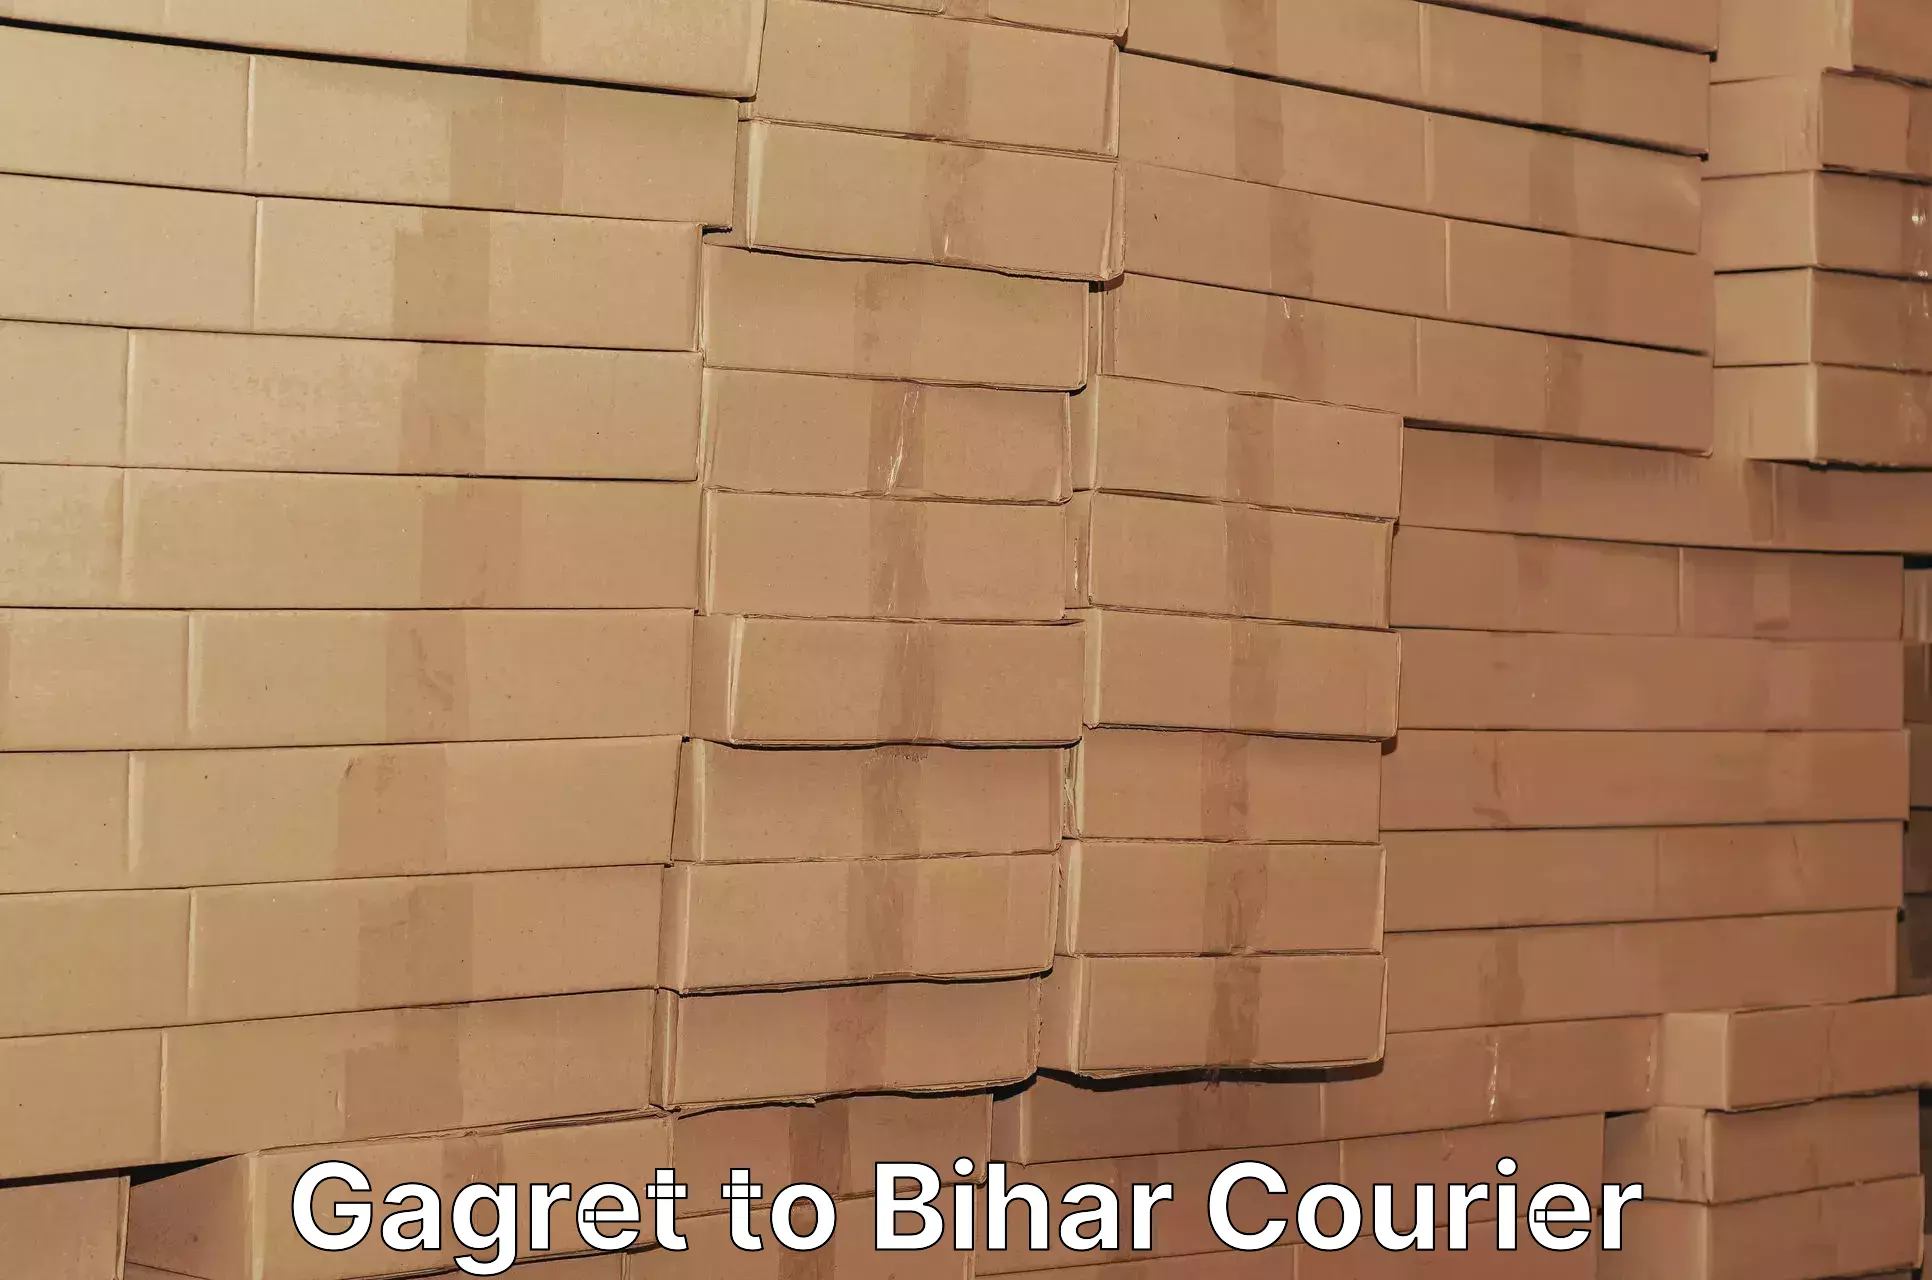 Ocean freight courier Gagret to Bihar